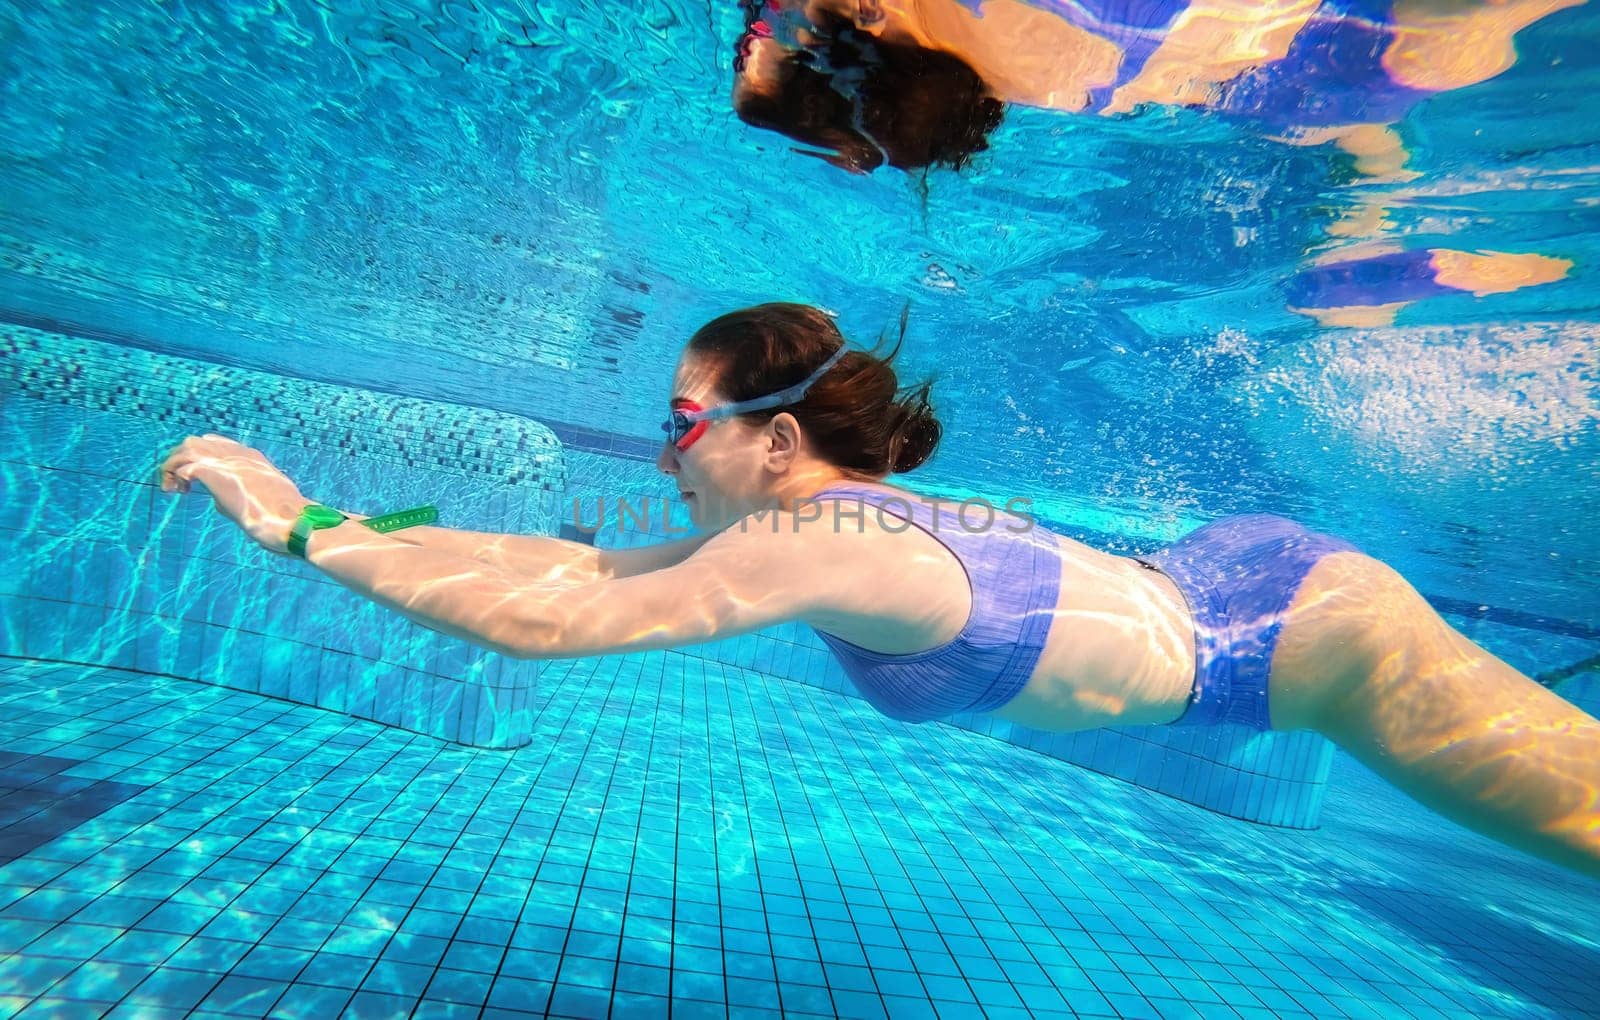 Beautiful girl swimming underwater in pool by GekaSkr